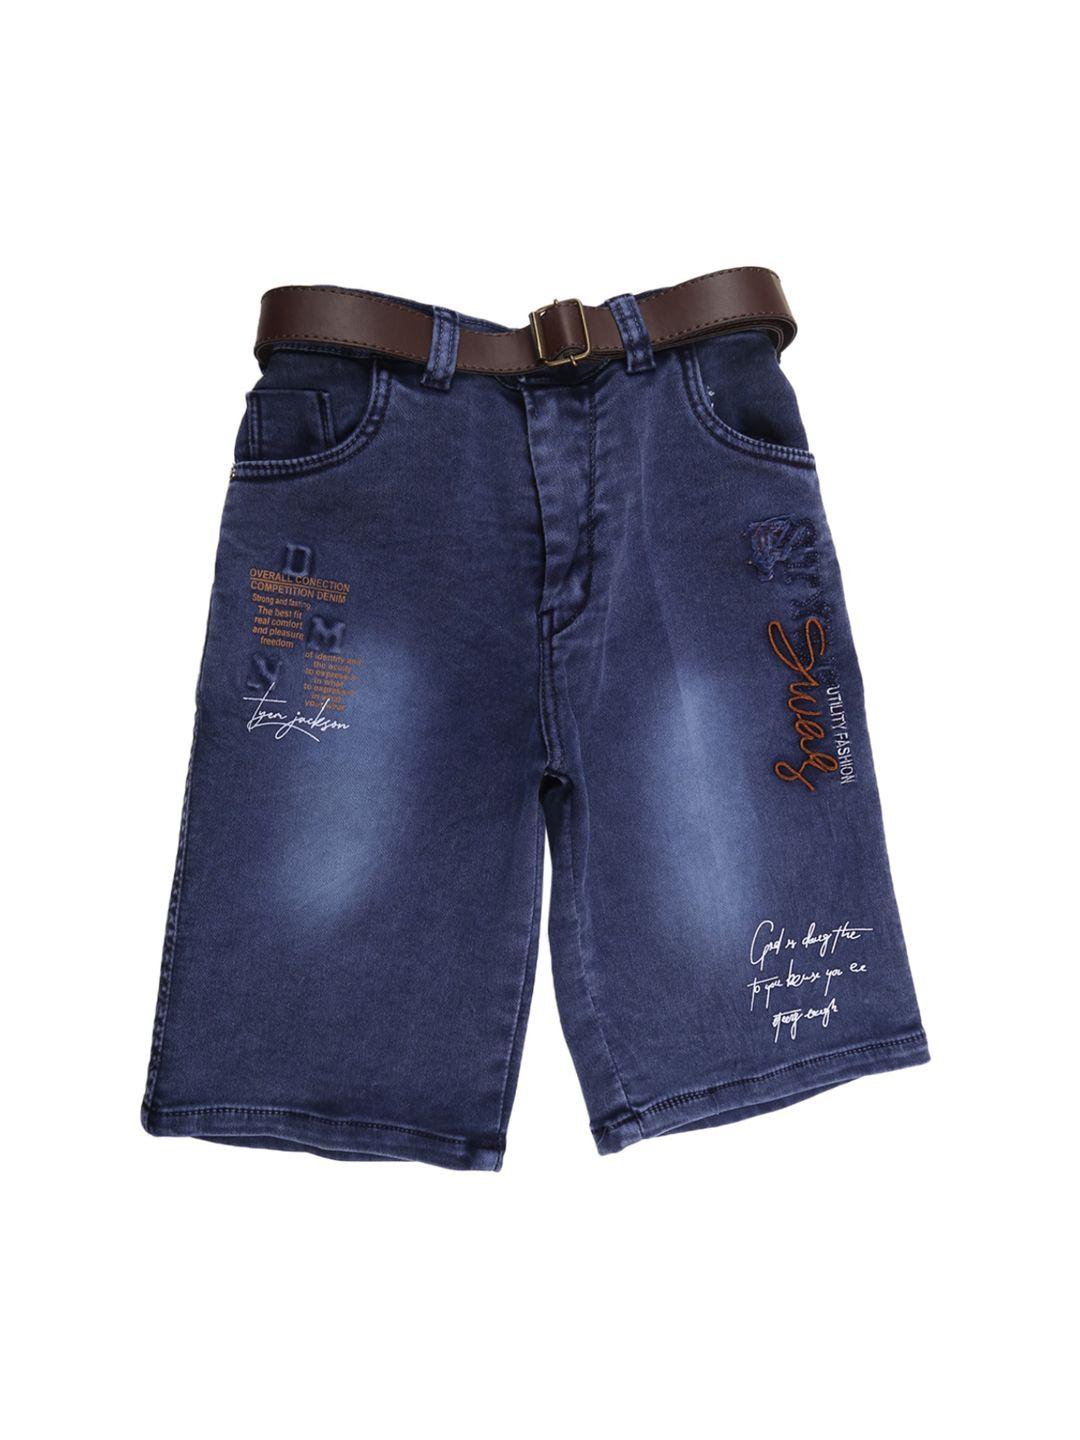 v-mart boys navy blue washed denim shorts